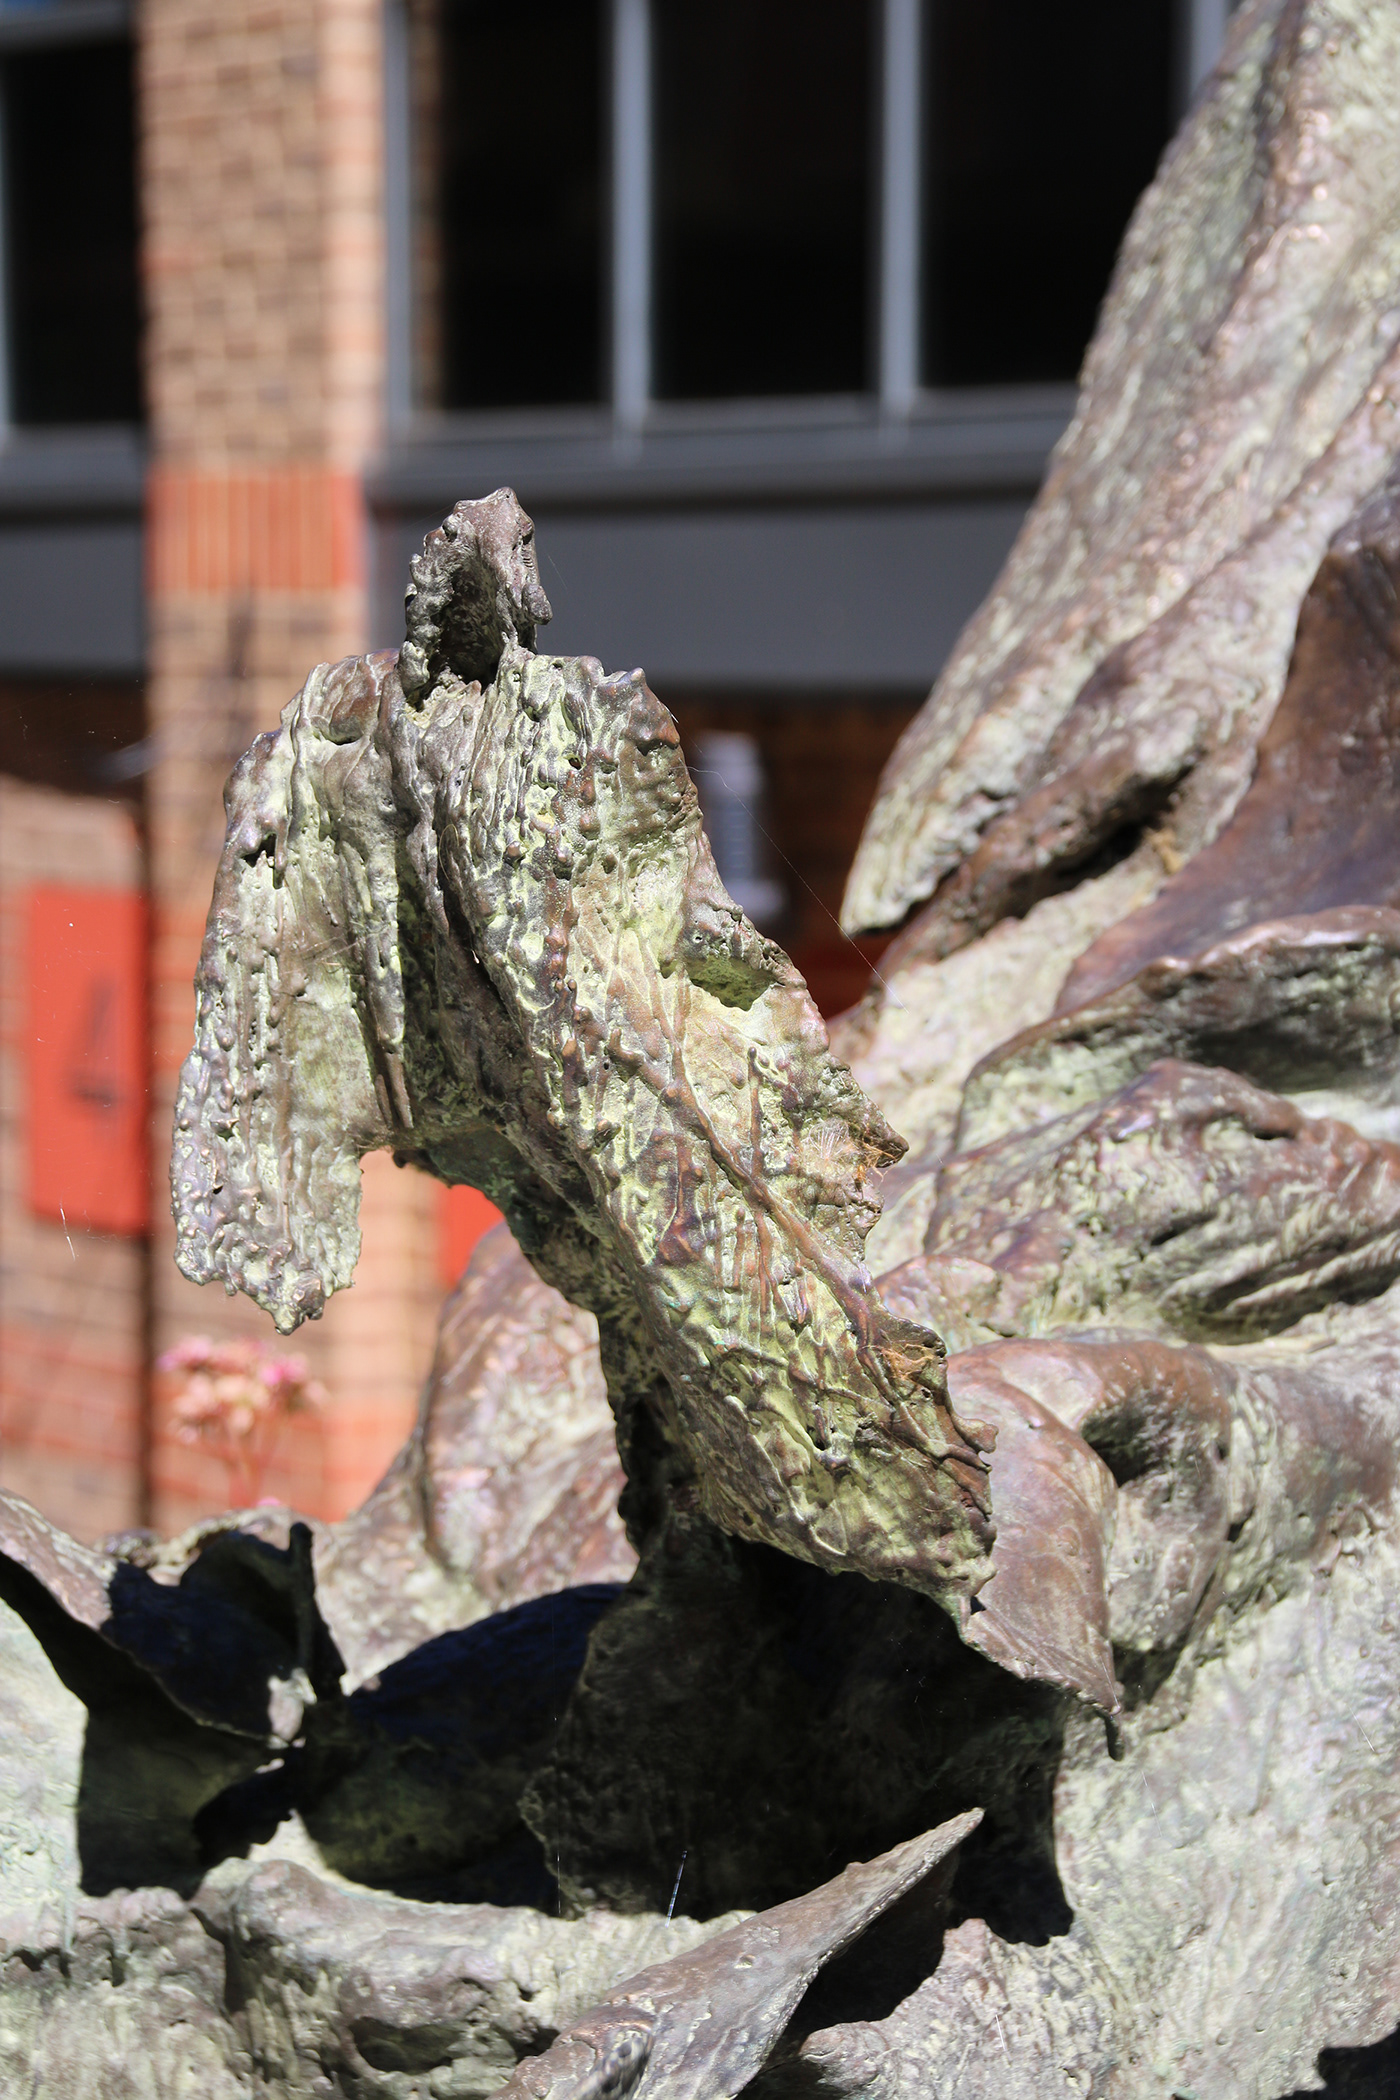 bronze celestial London publicart sculpture